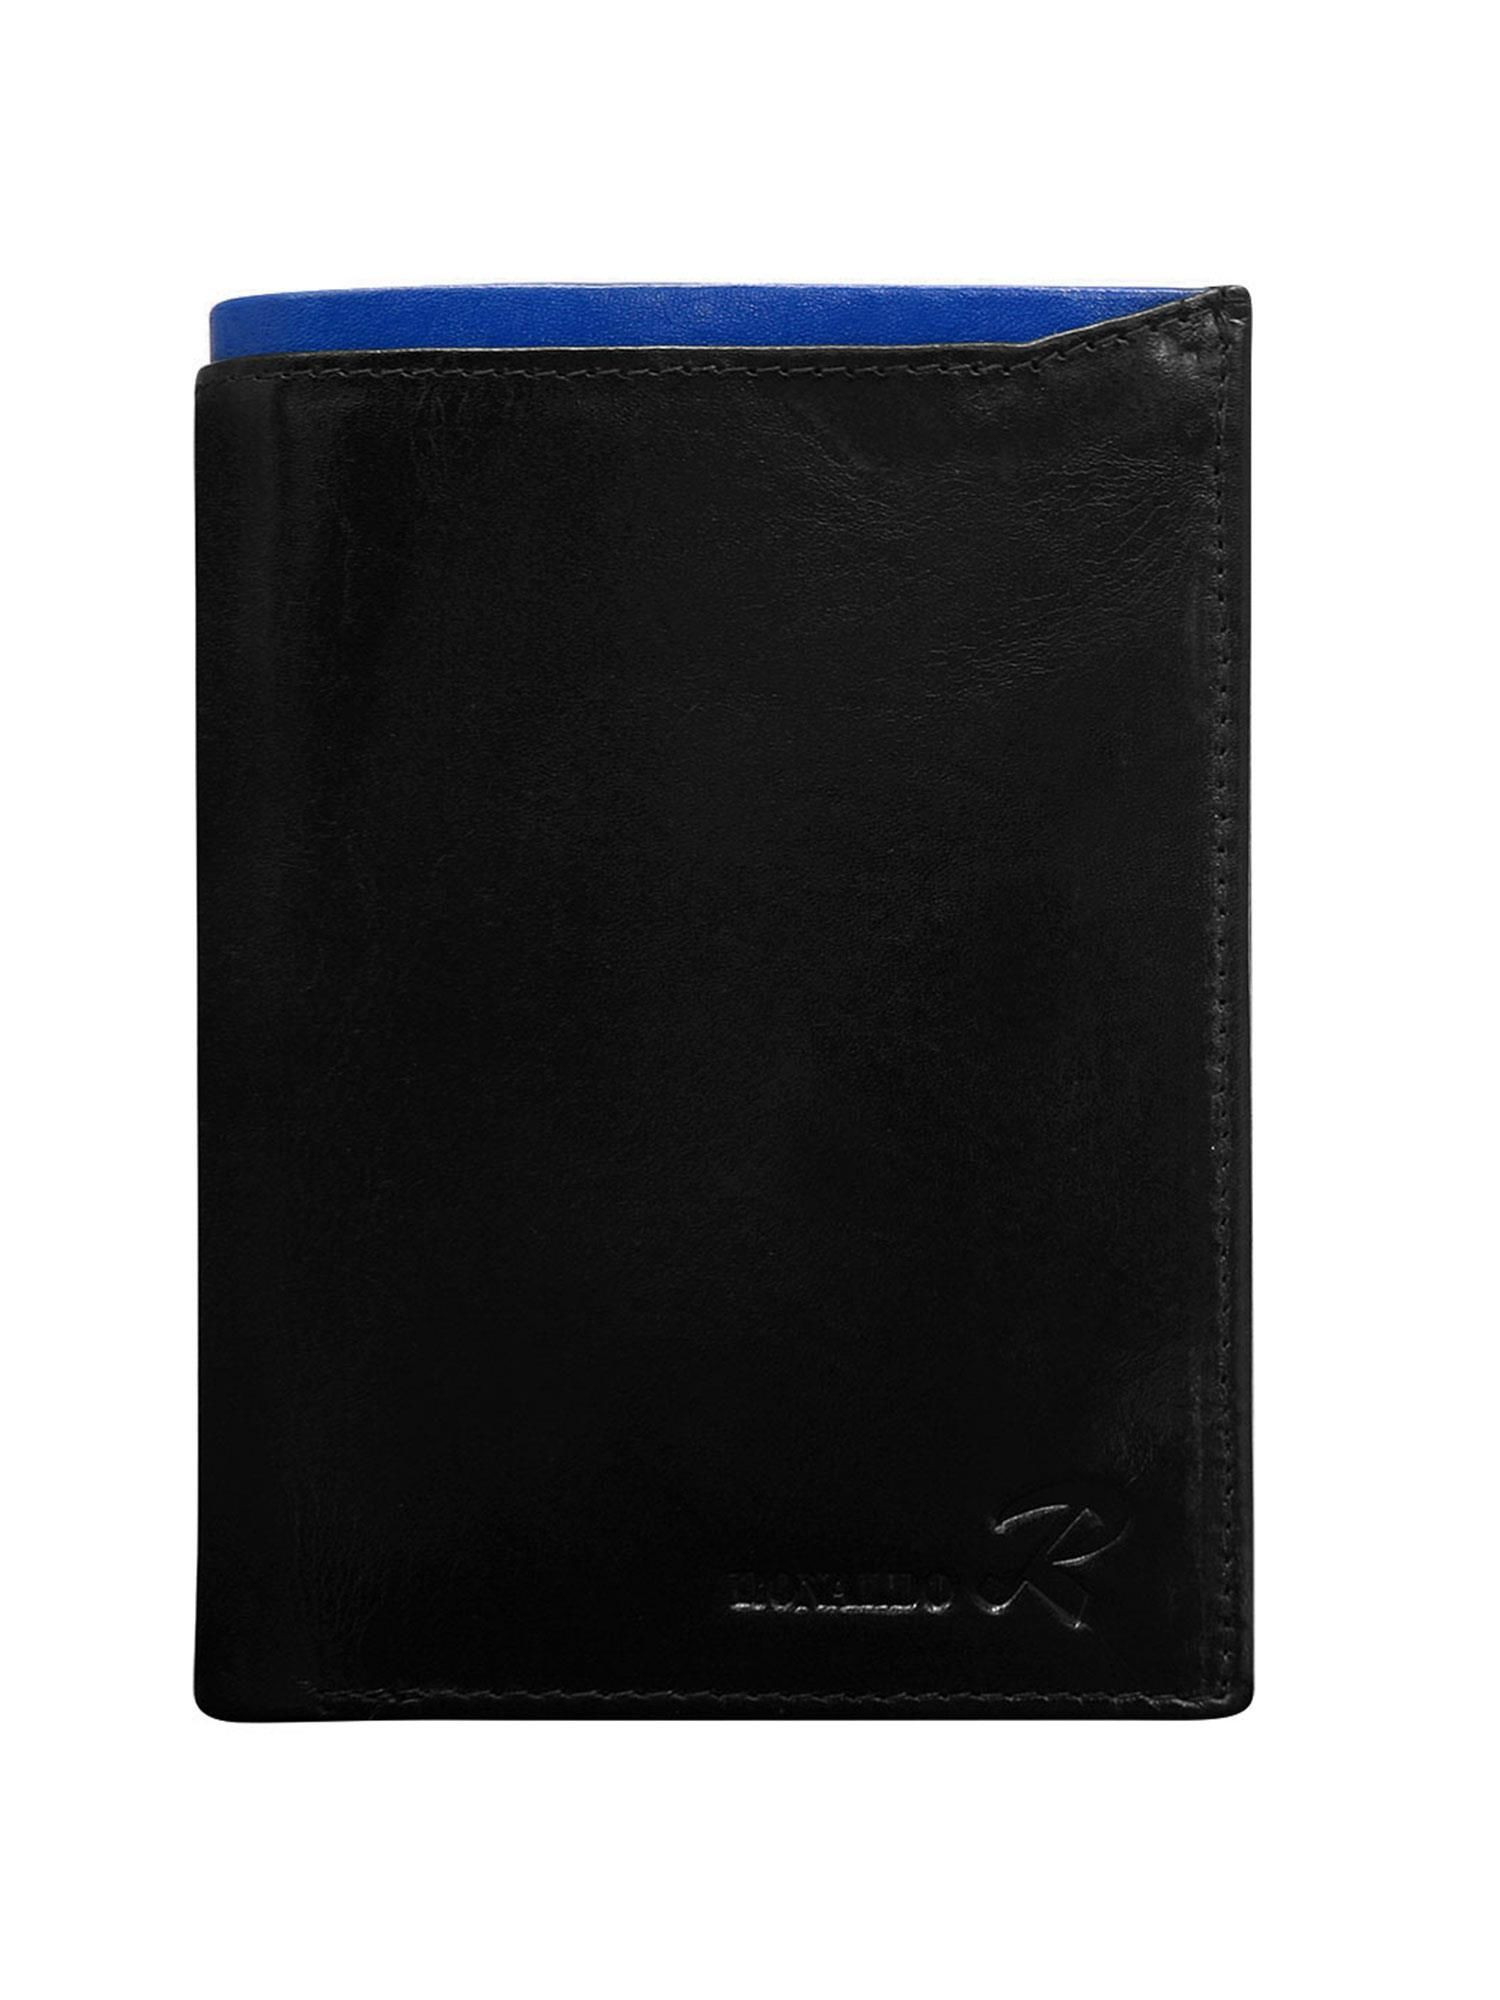 Peněženka CE PR D1072 VT.94 černá a modrá jedna velikost